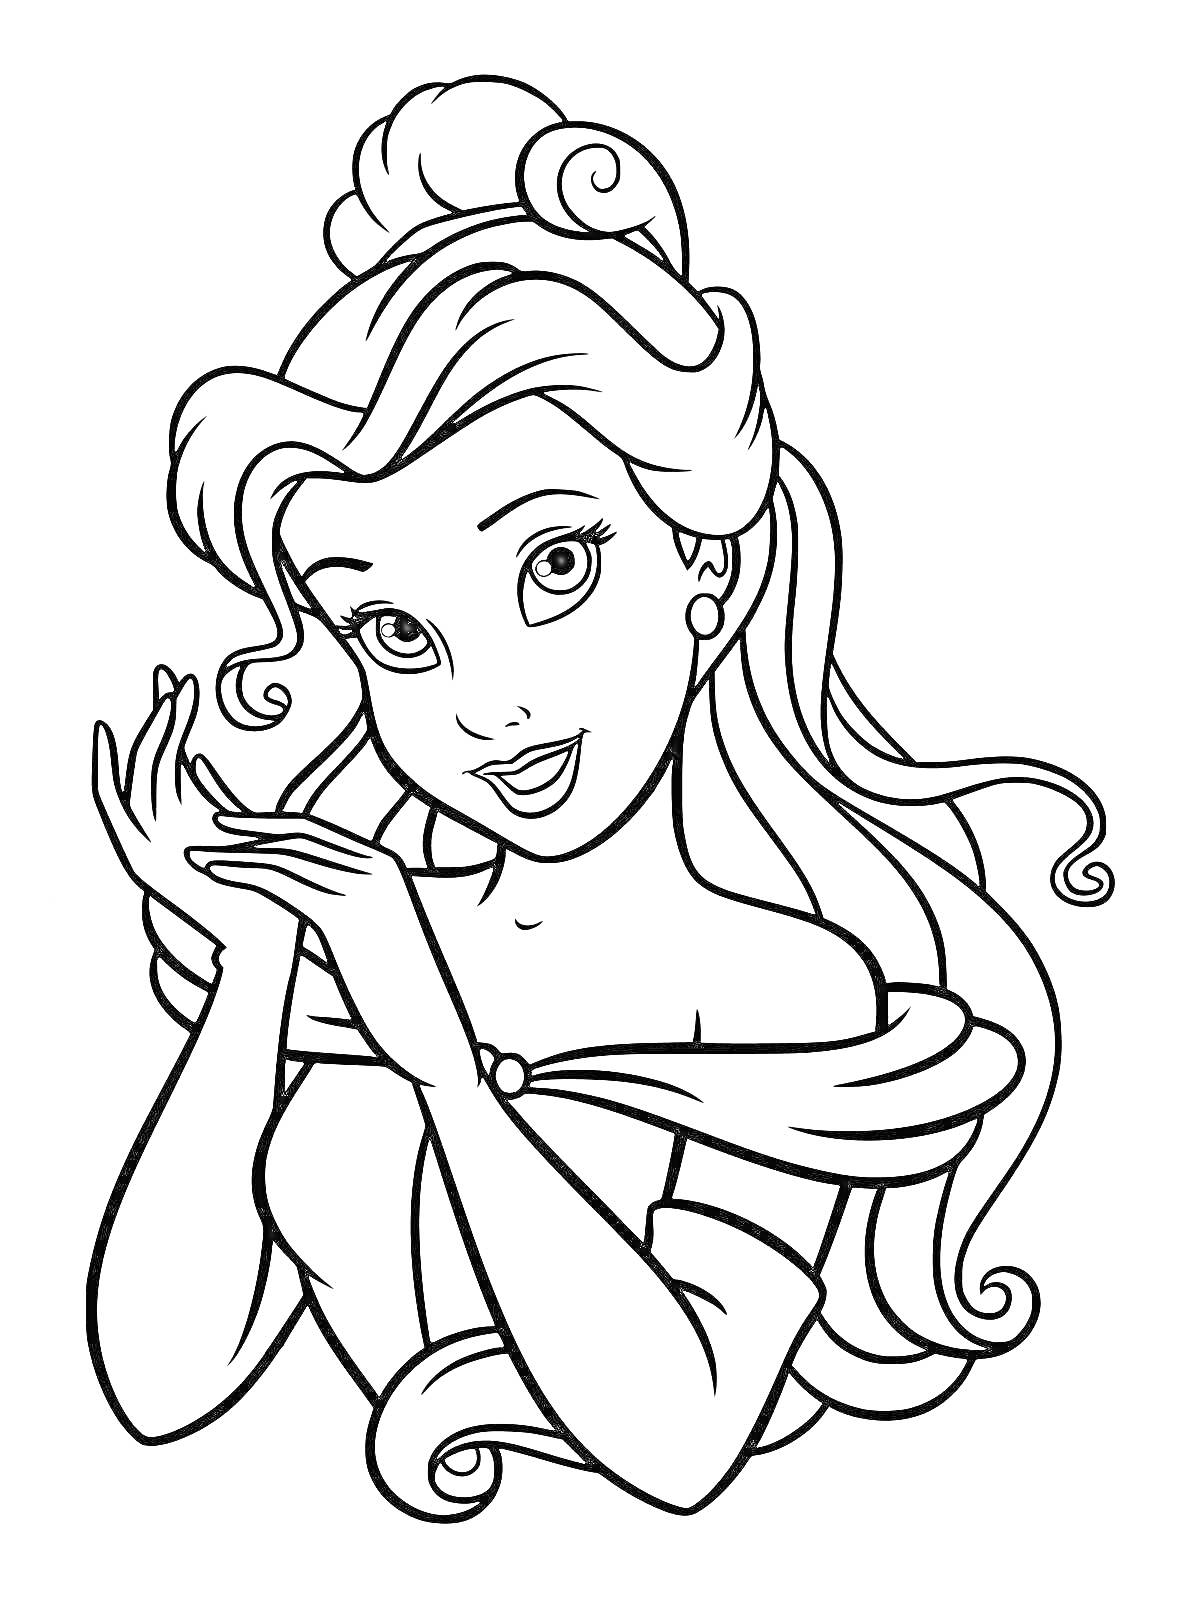 Принцесса с распущенными волосами и собранной на макушке прической, в платье с открытыми плечами, сложившая руки перед лицом